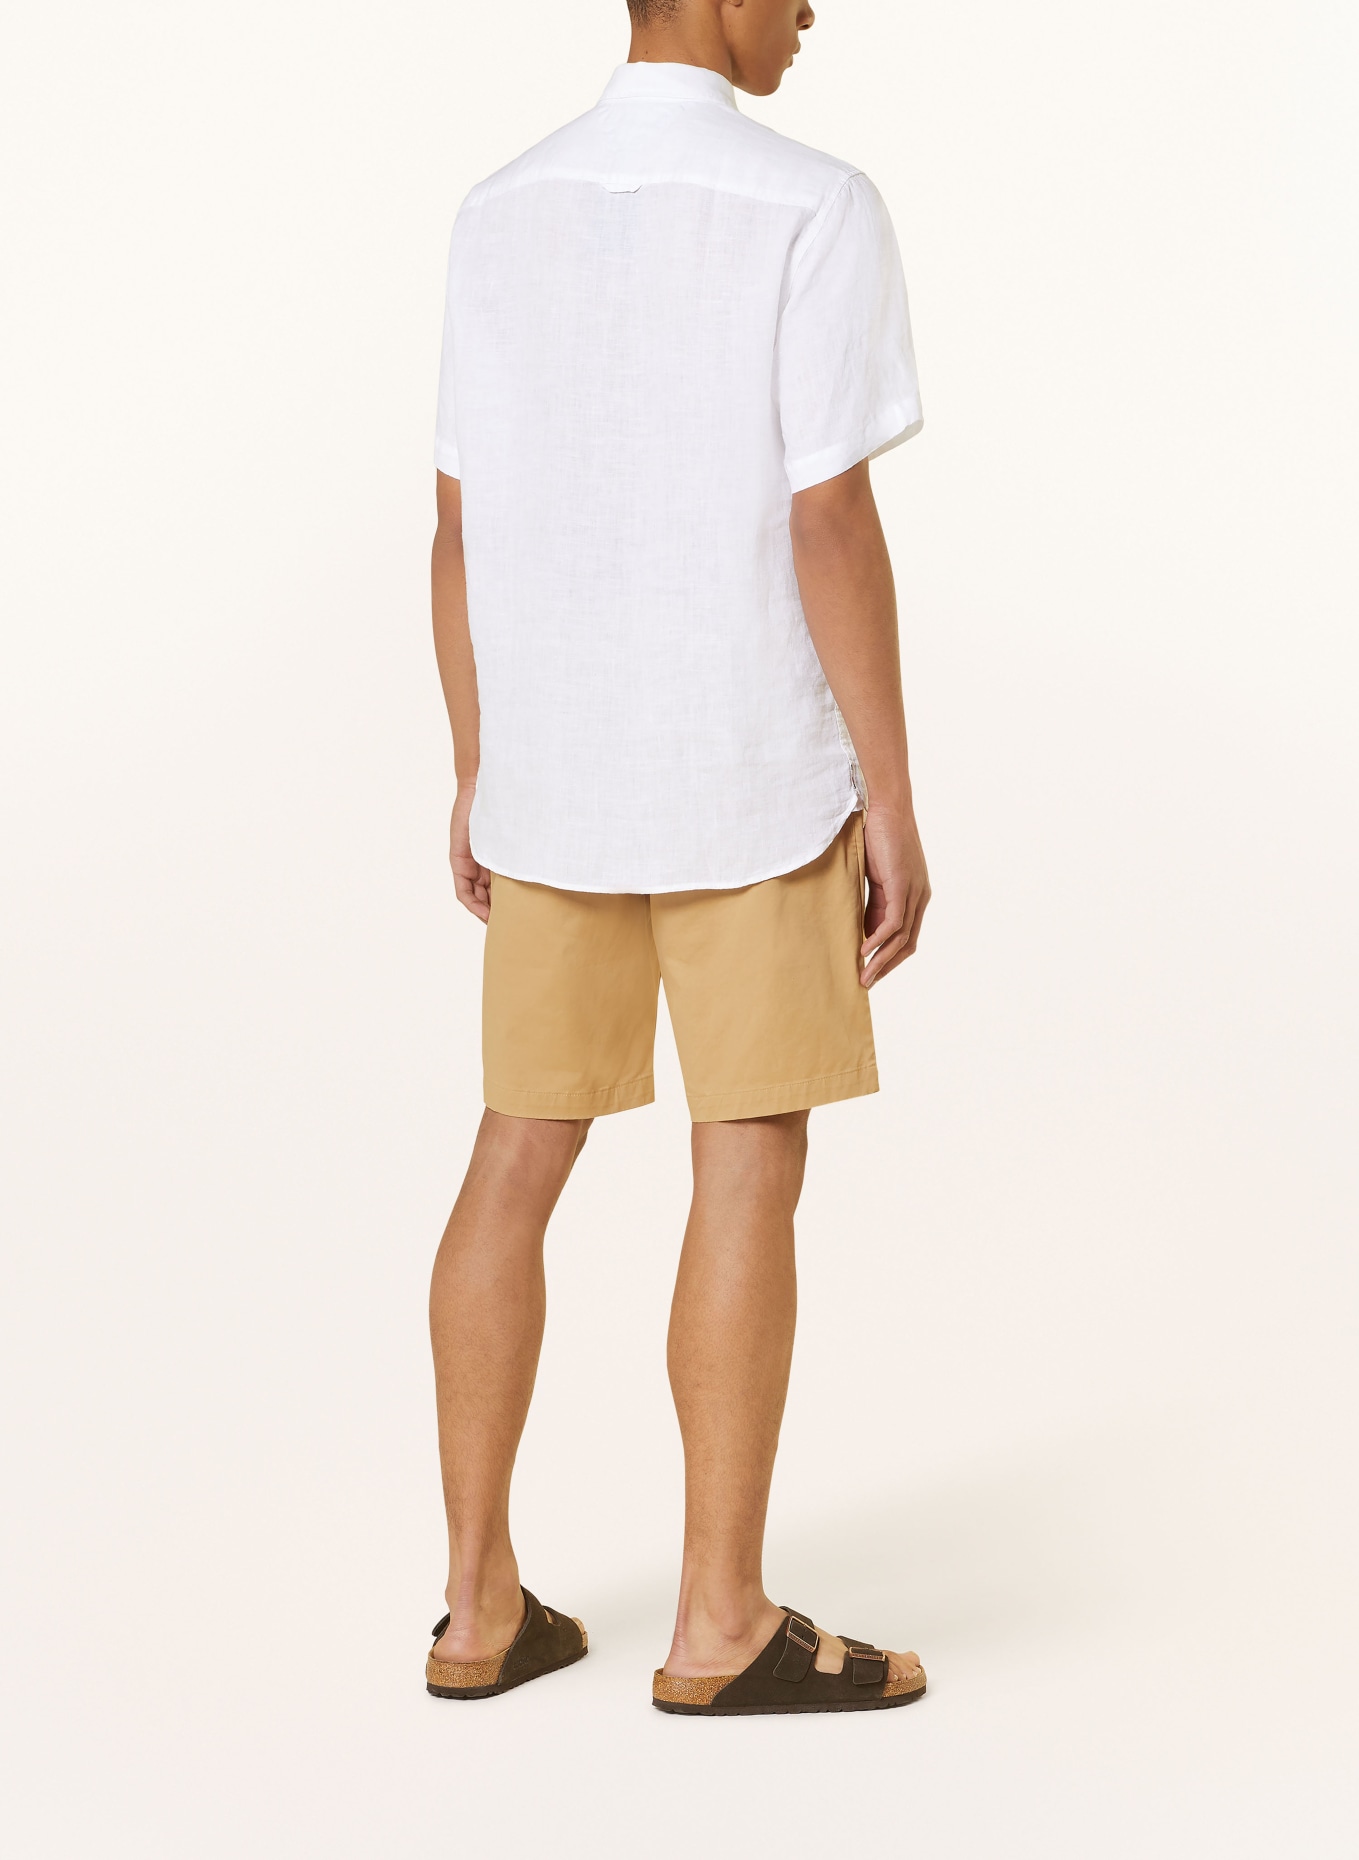 TOMMY HILFIGER Short sleeve shirt regular fit made of linen, Color: WHITE (Image 3)